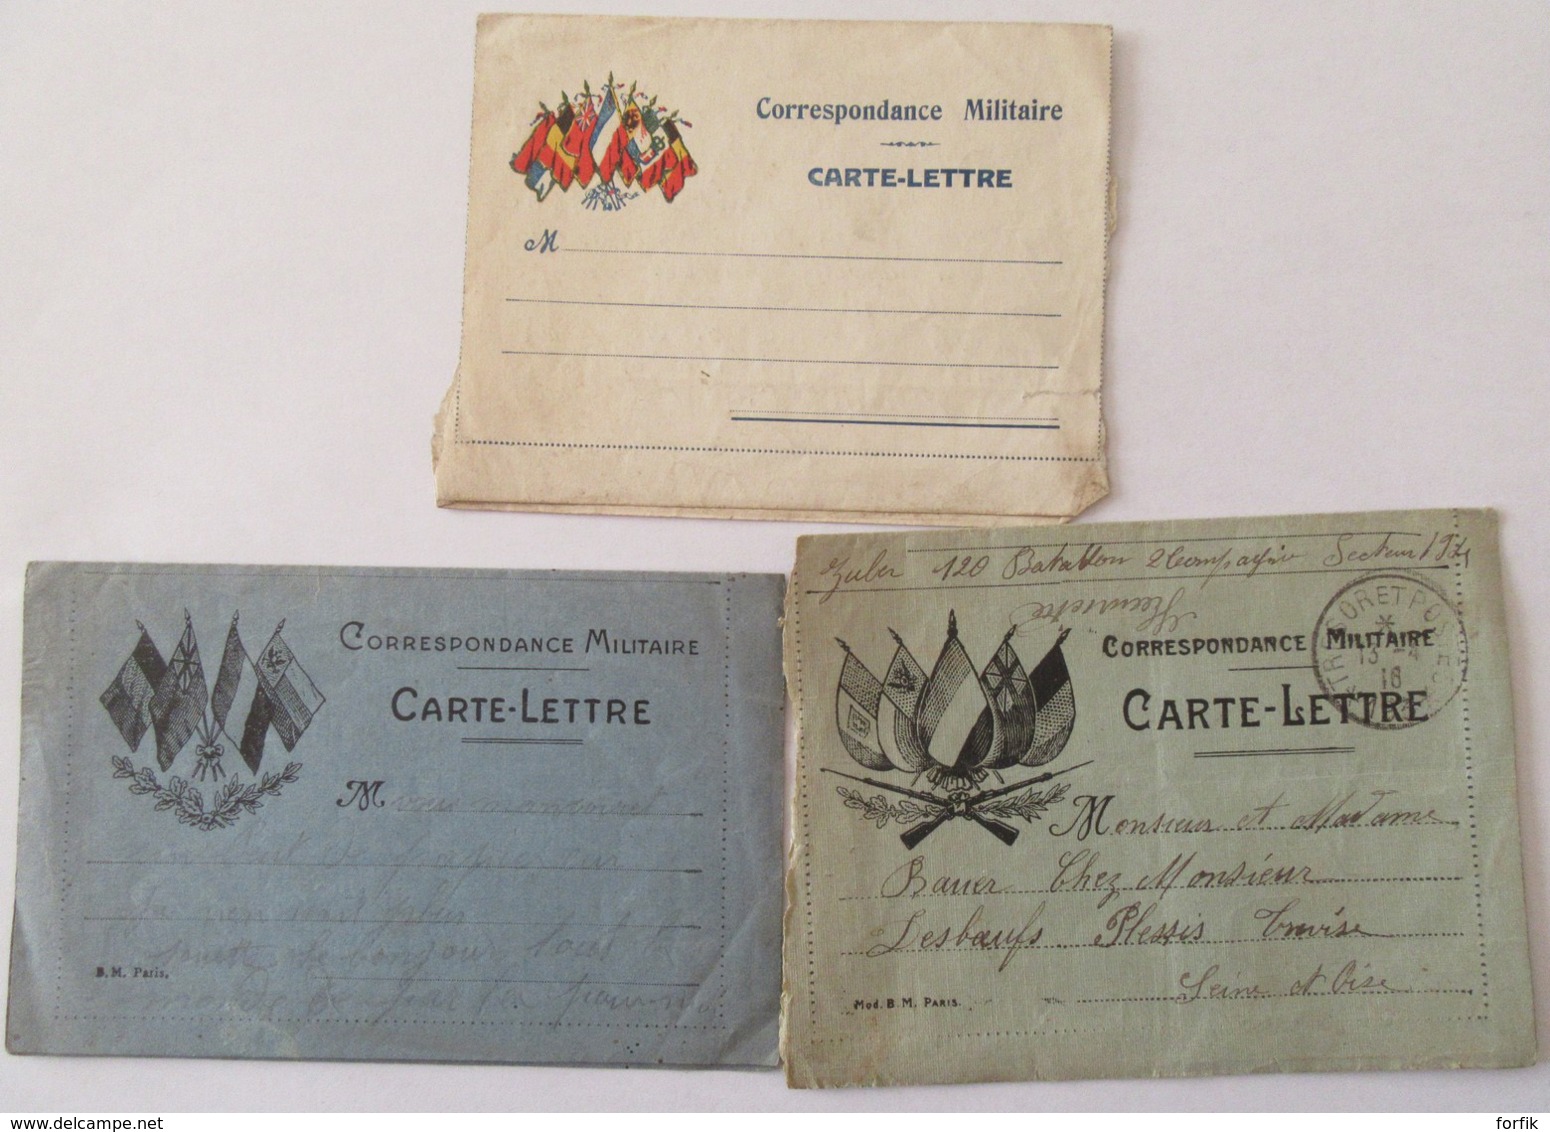 Lot de 7 Correspondances militaires Guerre 14-18 dont cartes-lettres, cartes postales- Circulées, certaines avec cachets